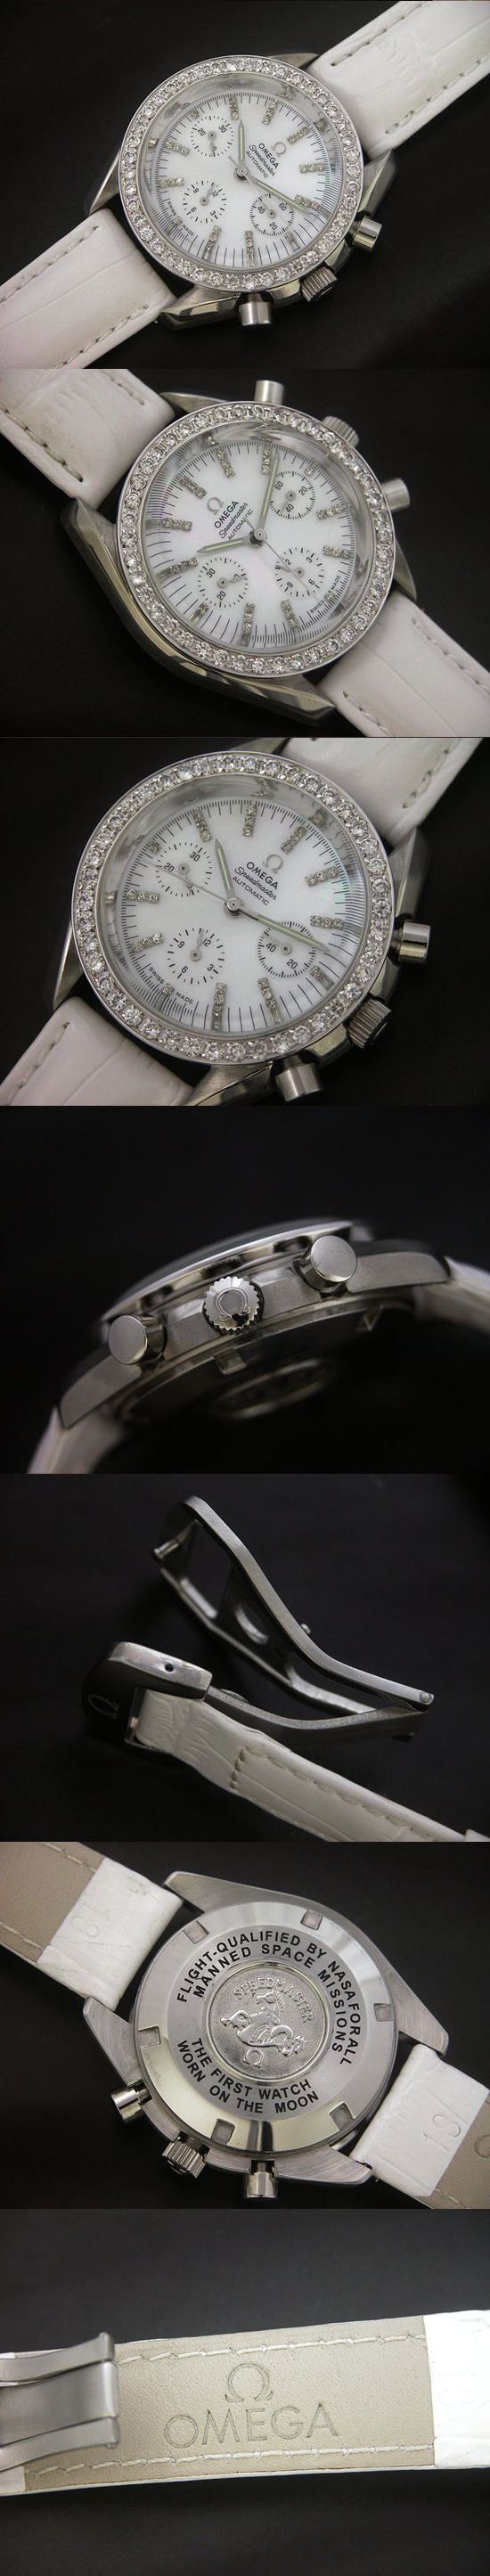 おしゃれなブランド時計がオメガ-スピードマスター-OMEGA-OM00048J-女性用を提供します.